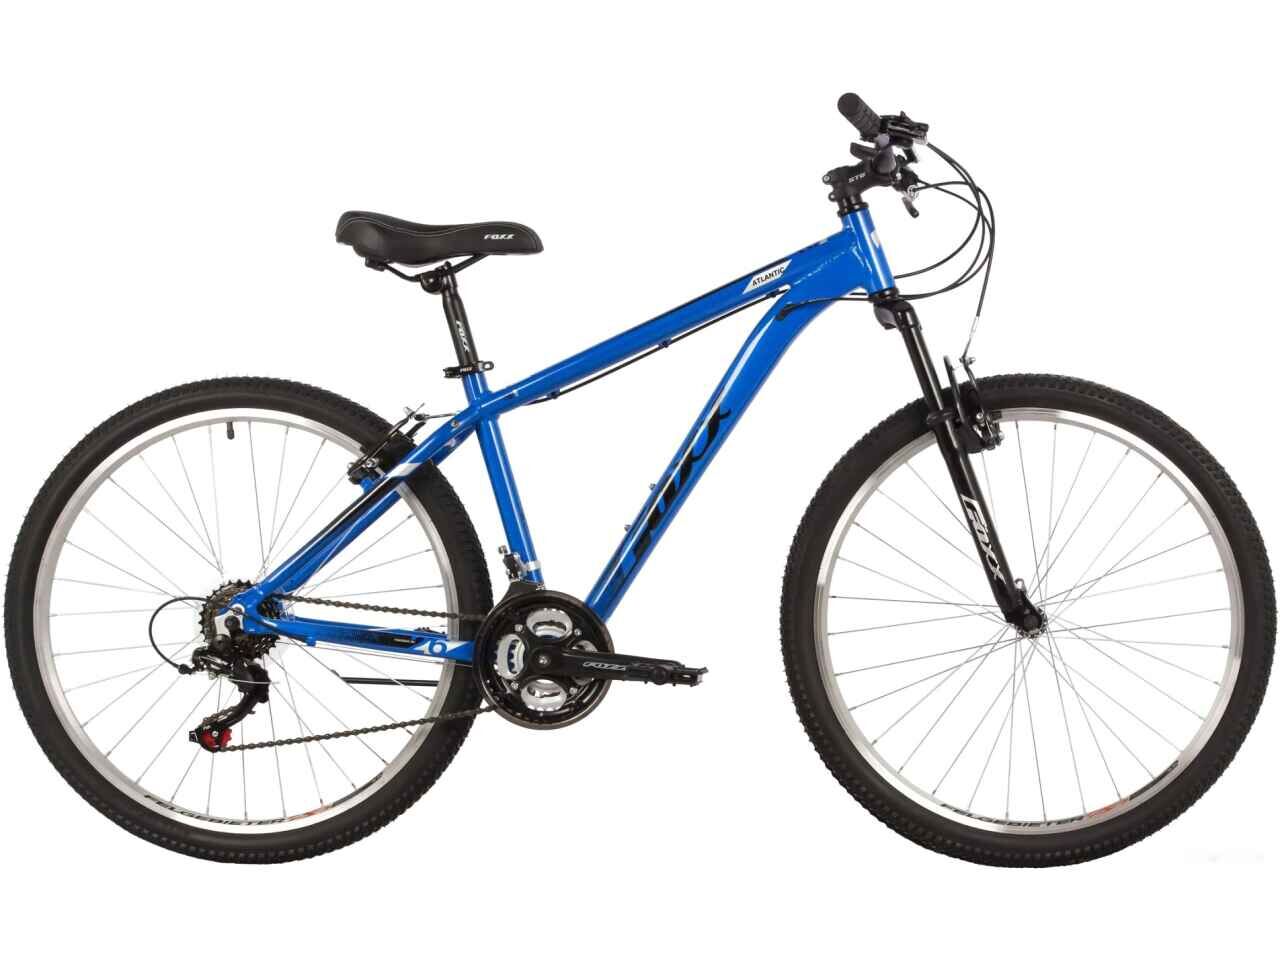 Велосипед Foxx Atlantic 26 р.18 2022 (синий)